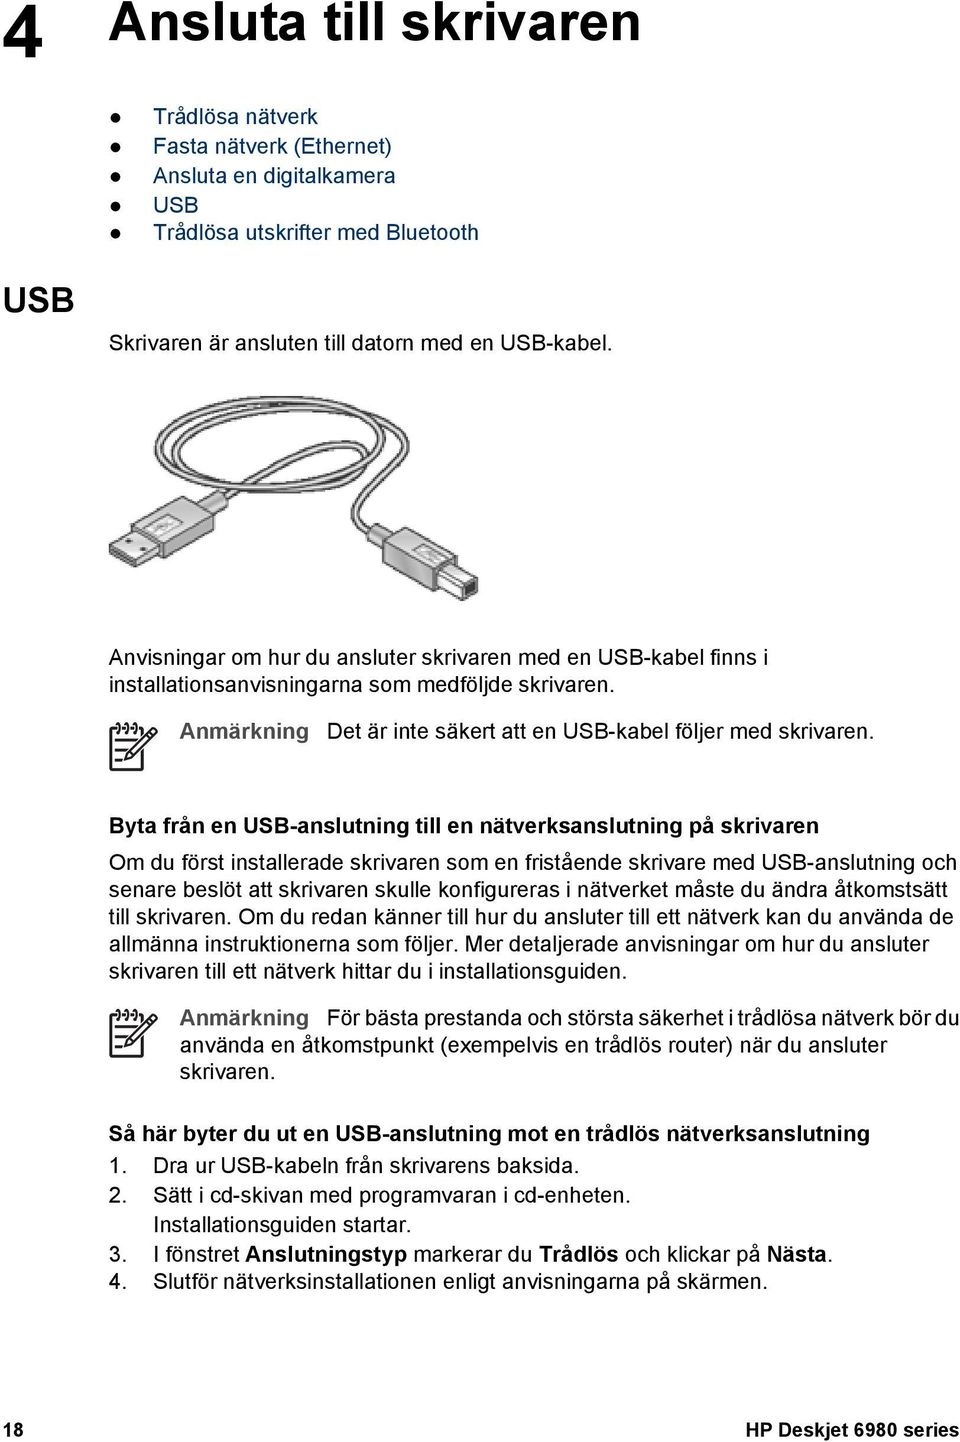 Byta från en USB-anslutning till en nätverksanslutning på skrivaren Om du först installerade skrivaren som en fristående skrivare med USB-anslutning och senare beslöt att skrivaren skulle